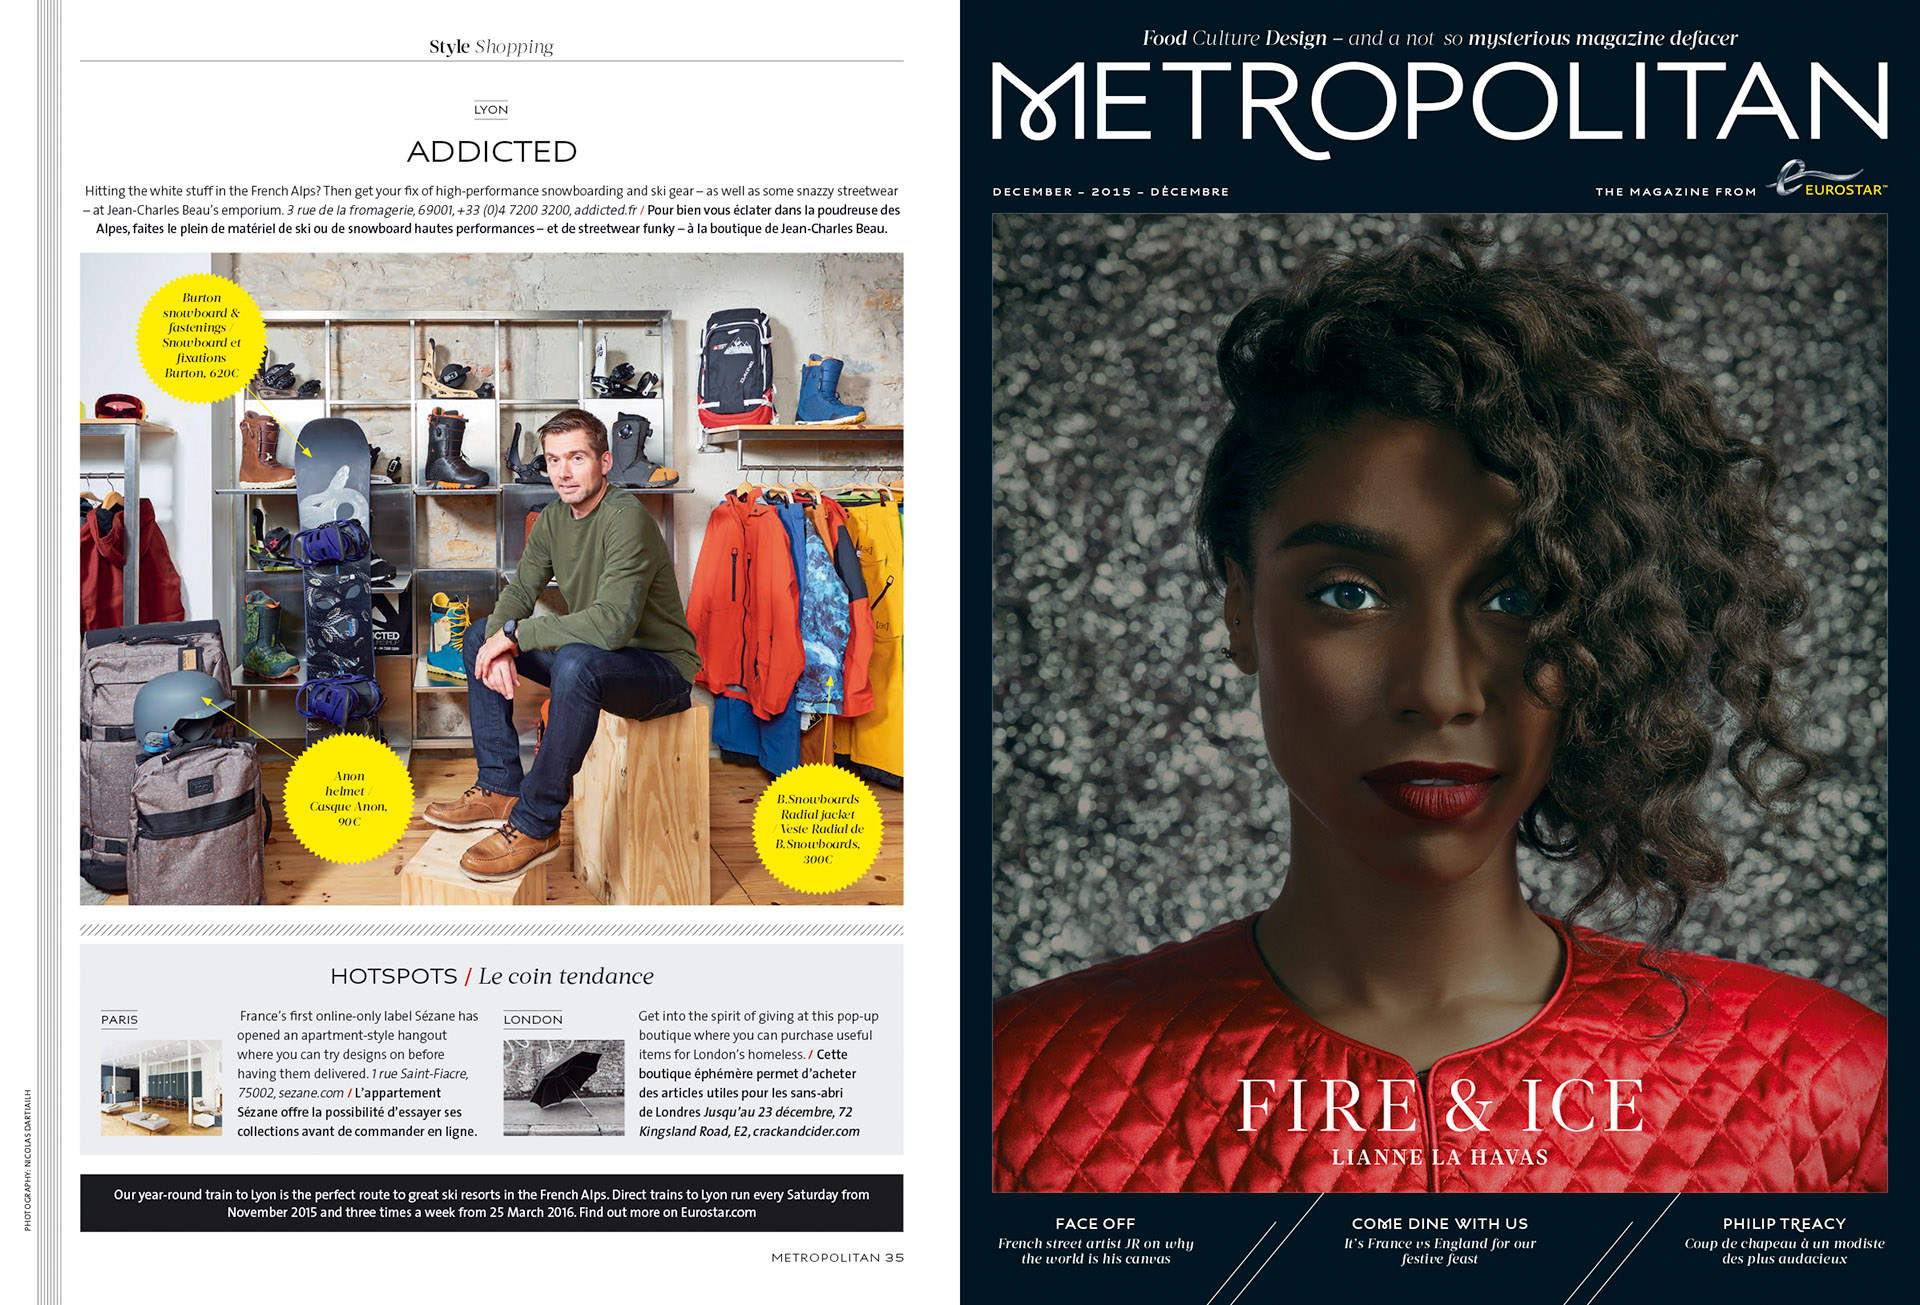 Eurostar Magazine - Metropolitan - Shopping - Décembre 2015